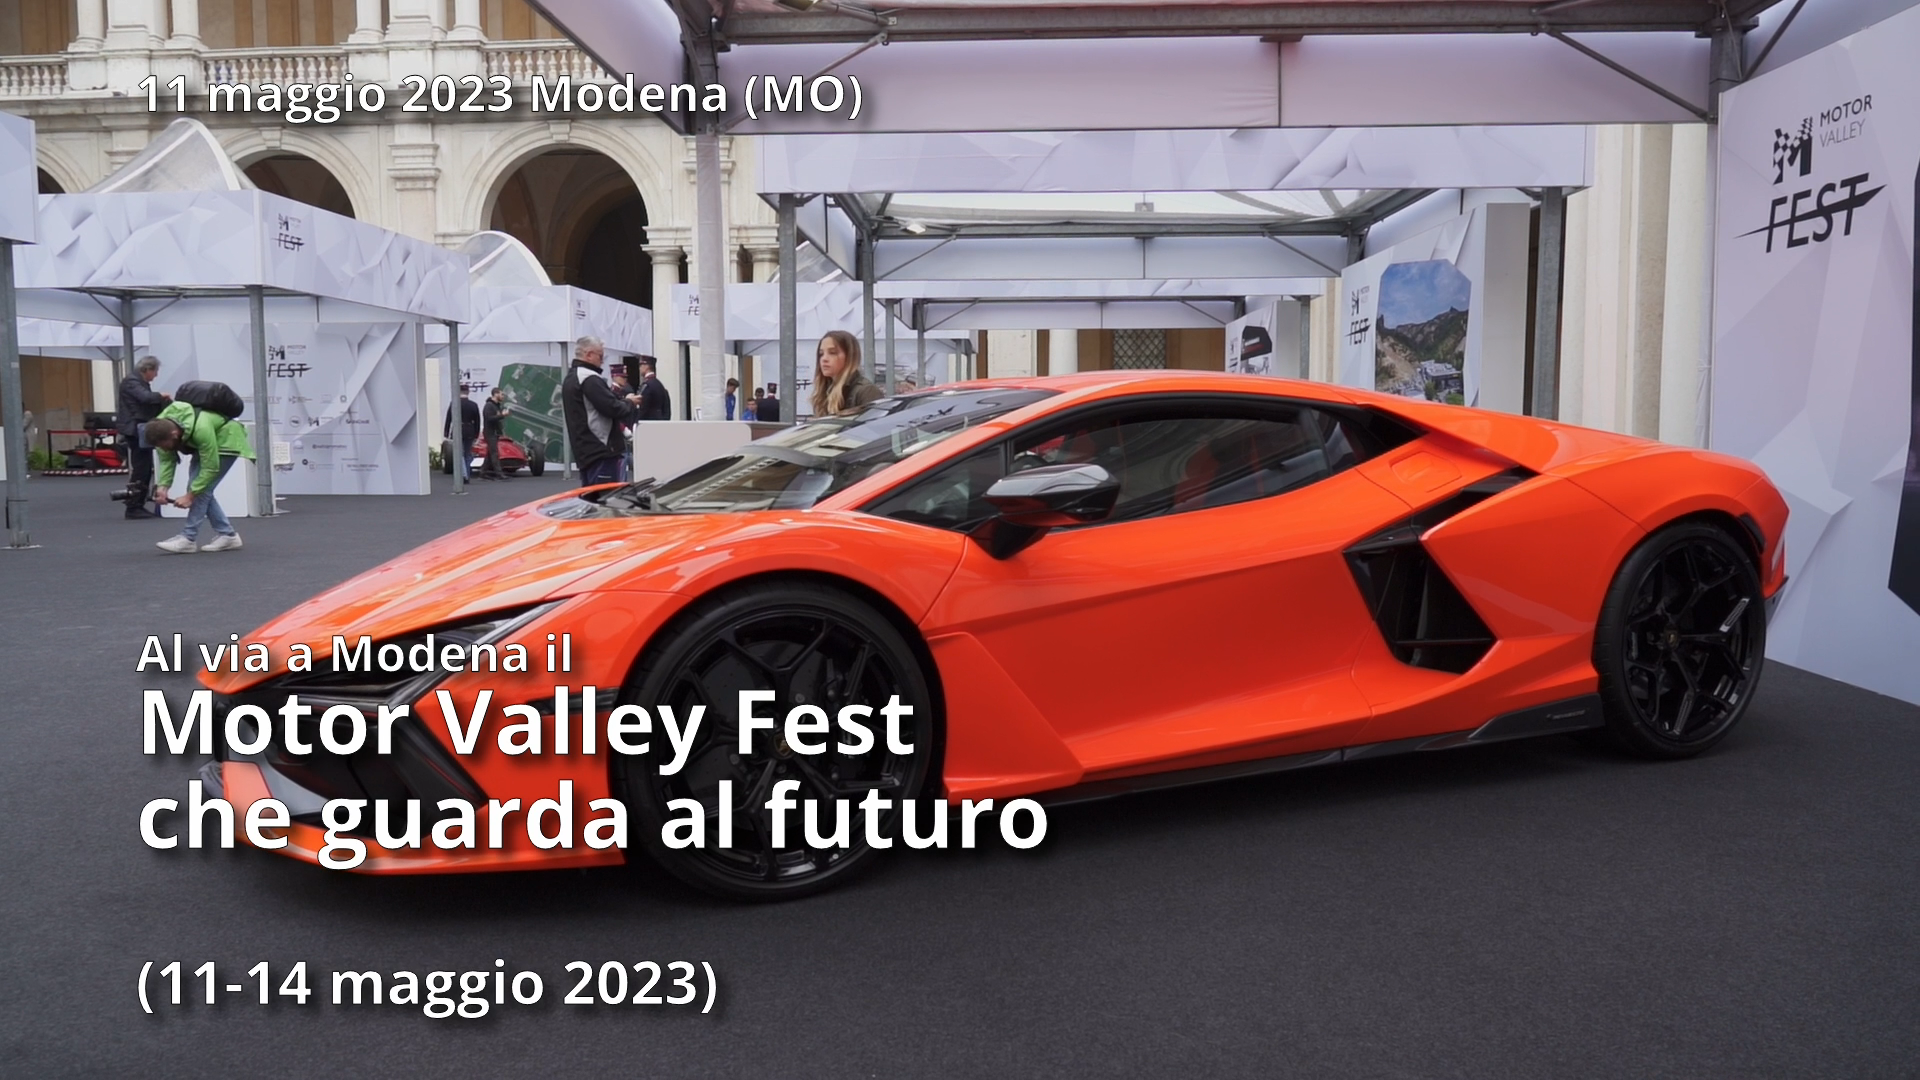 Al via a Modena il MOTOR VALLEY FEST che guarda al futuro